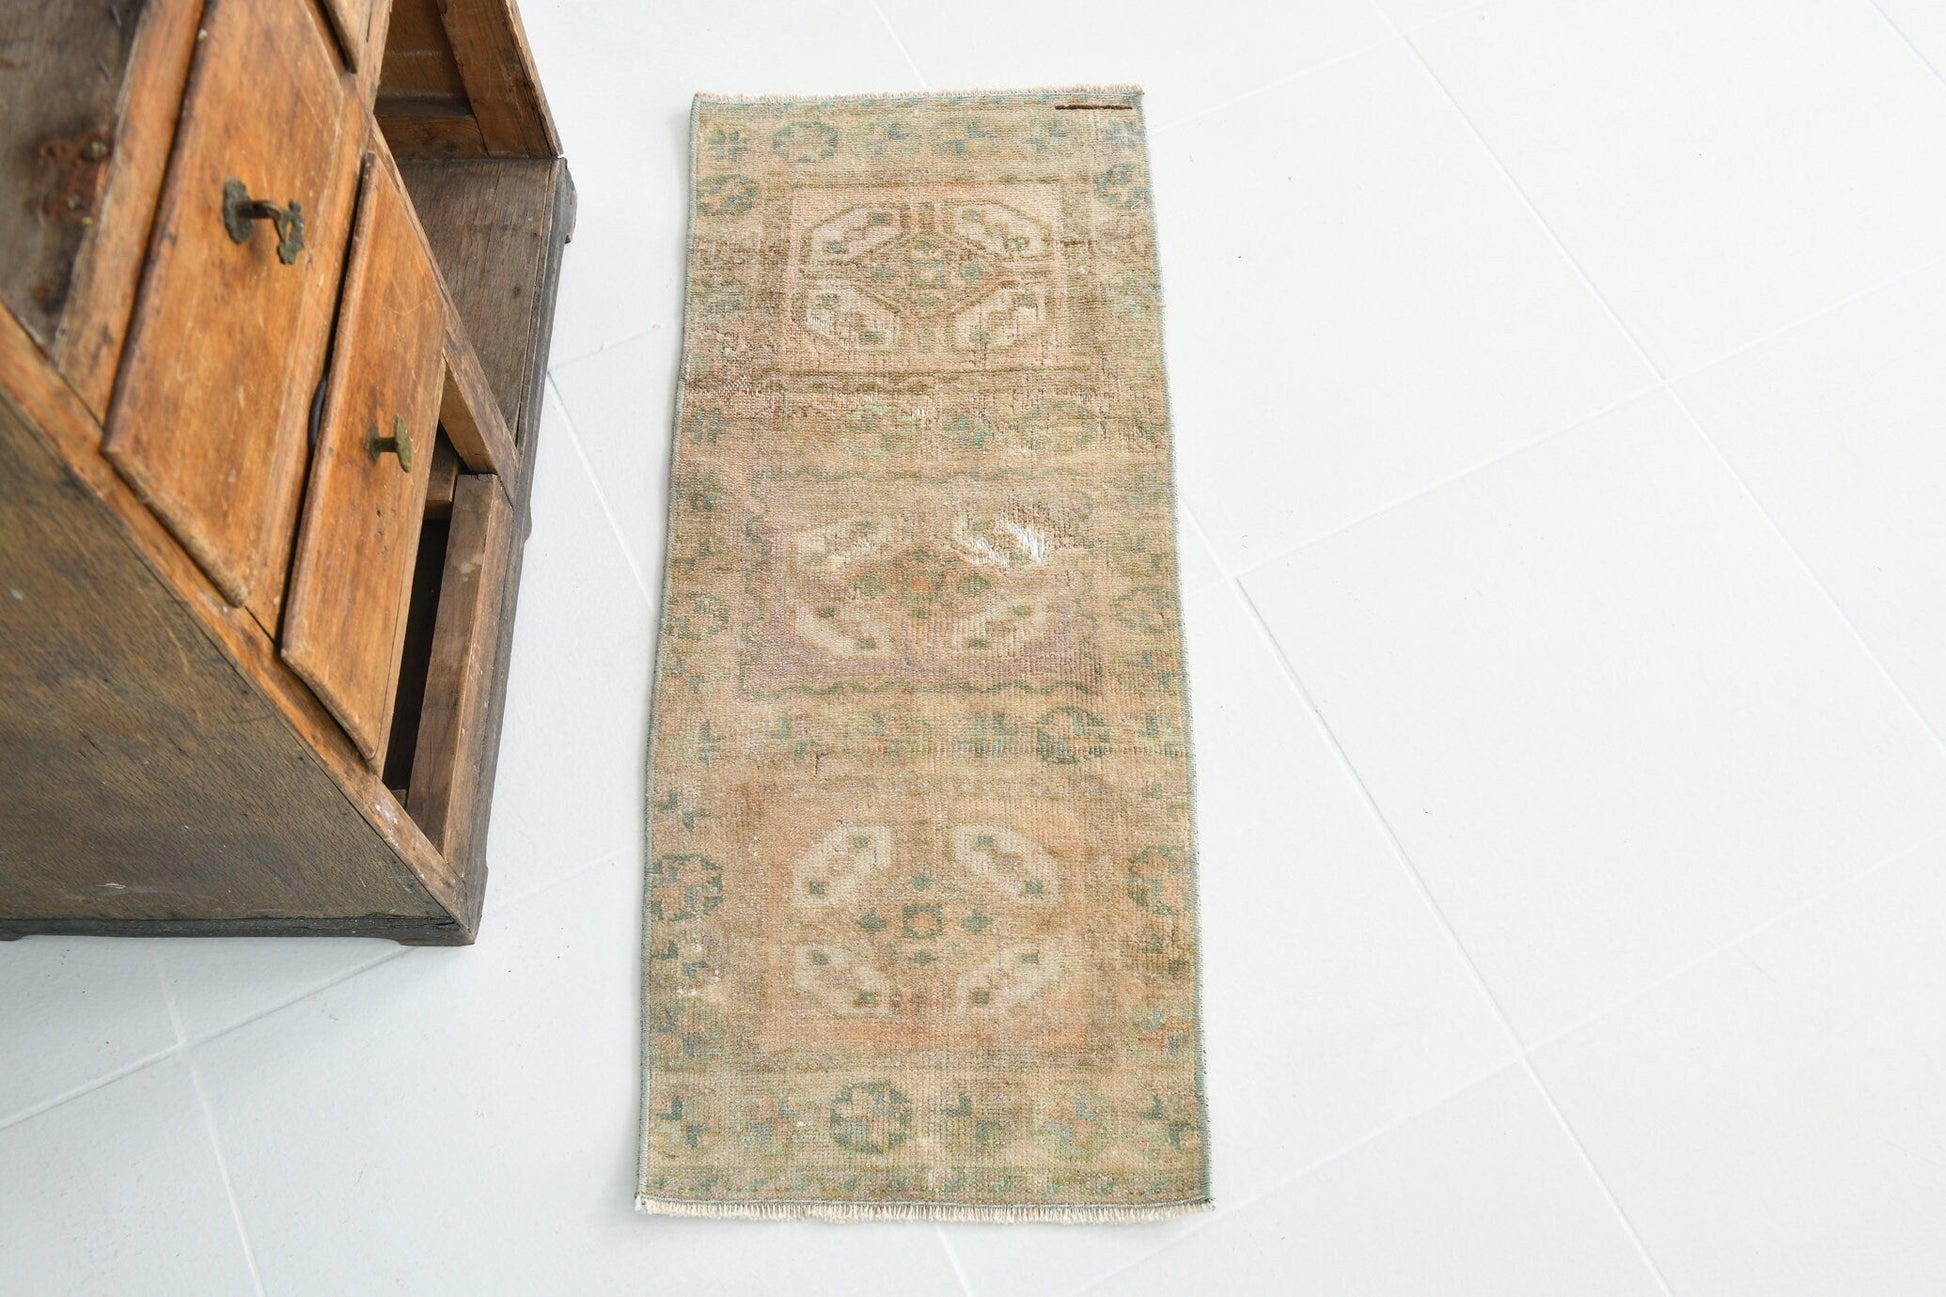 1’ x 3’ Turkish Vintage Doormat - 19465 - Rug Zengoda Shop online from Artisan Brands